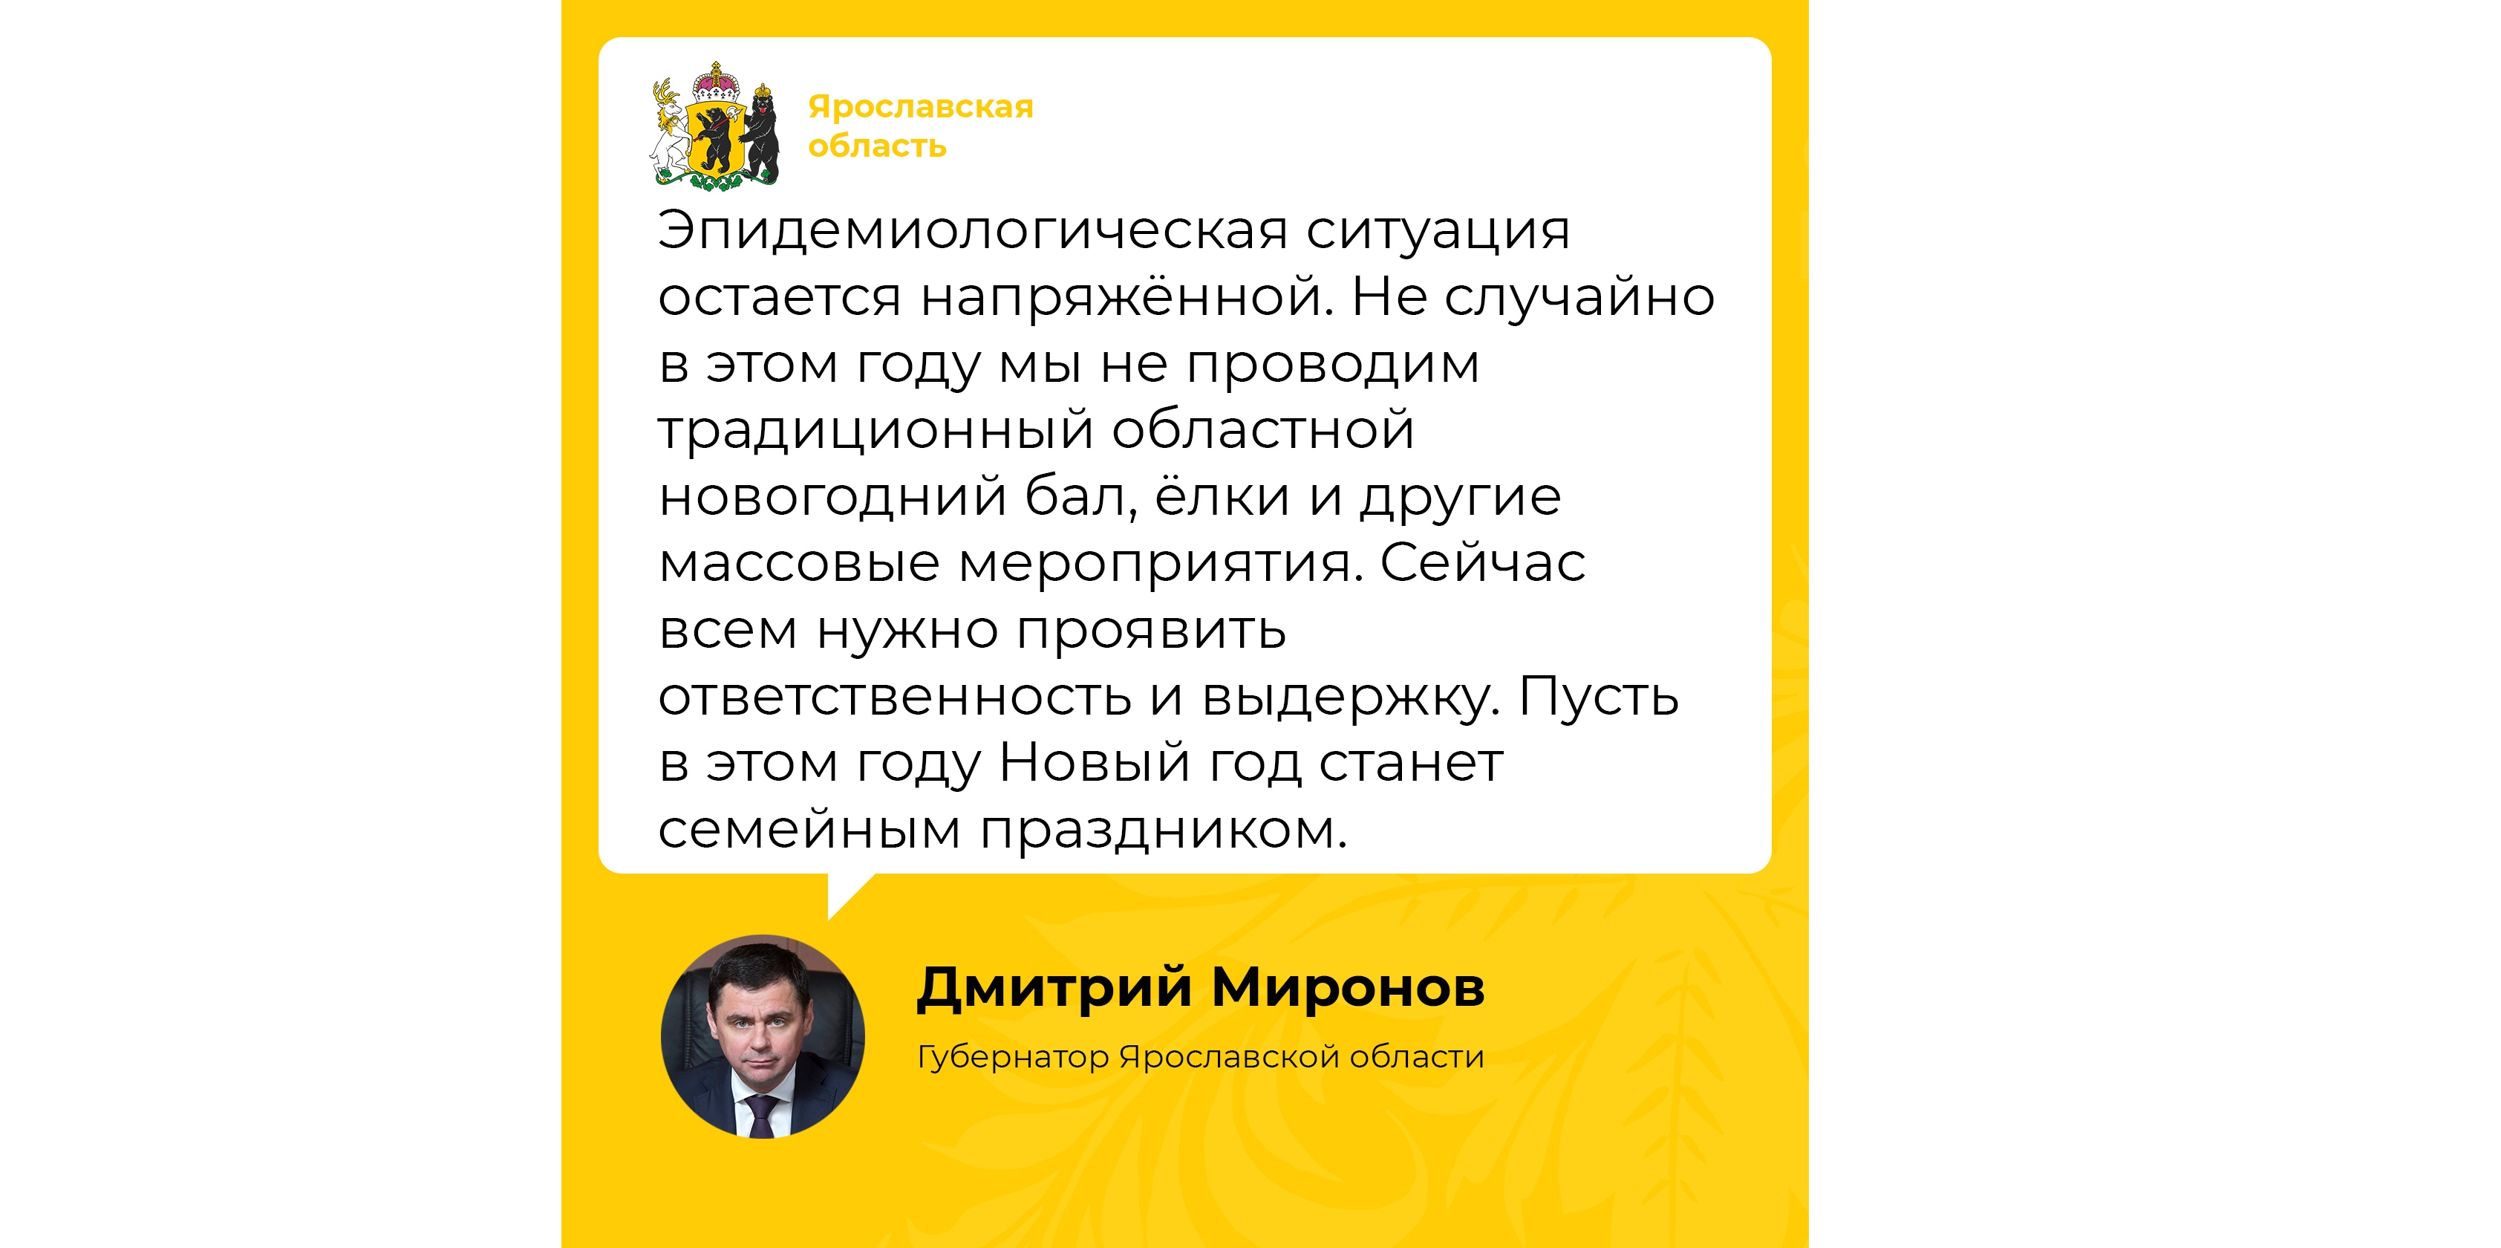 Дмитрий Миронов рекомендовал чиновникам воздержаться от новогодних корпоративов